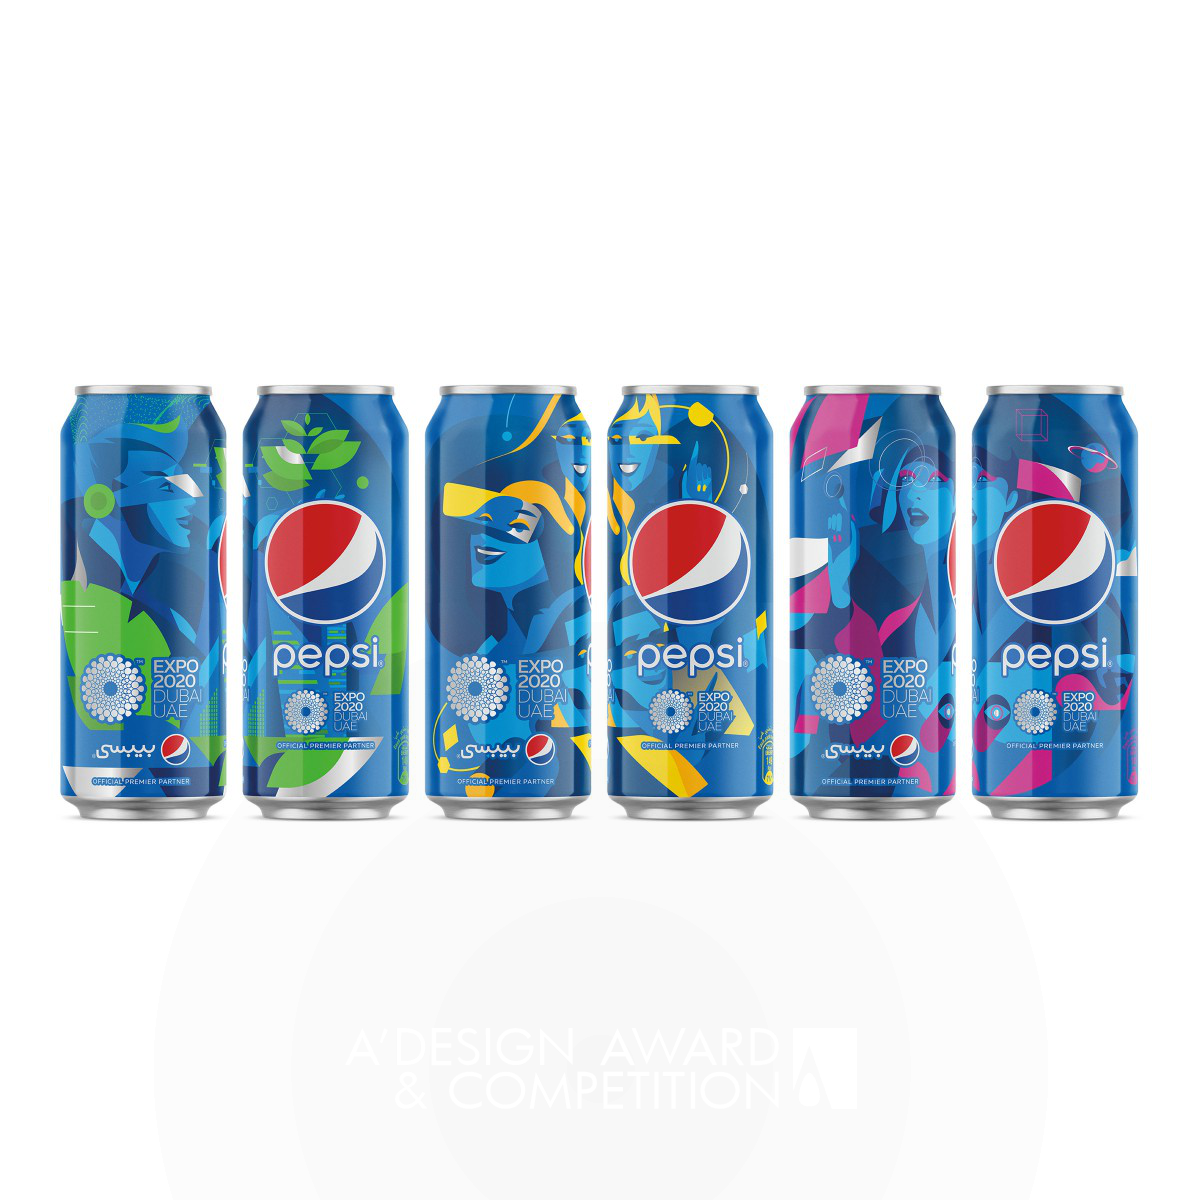 Pepsi Expo 2020 <b>Beverage